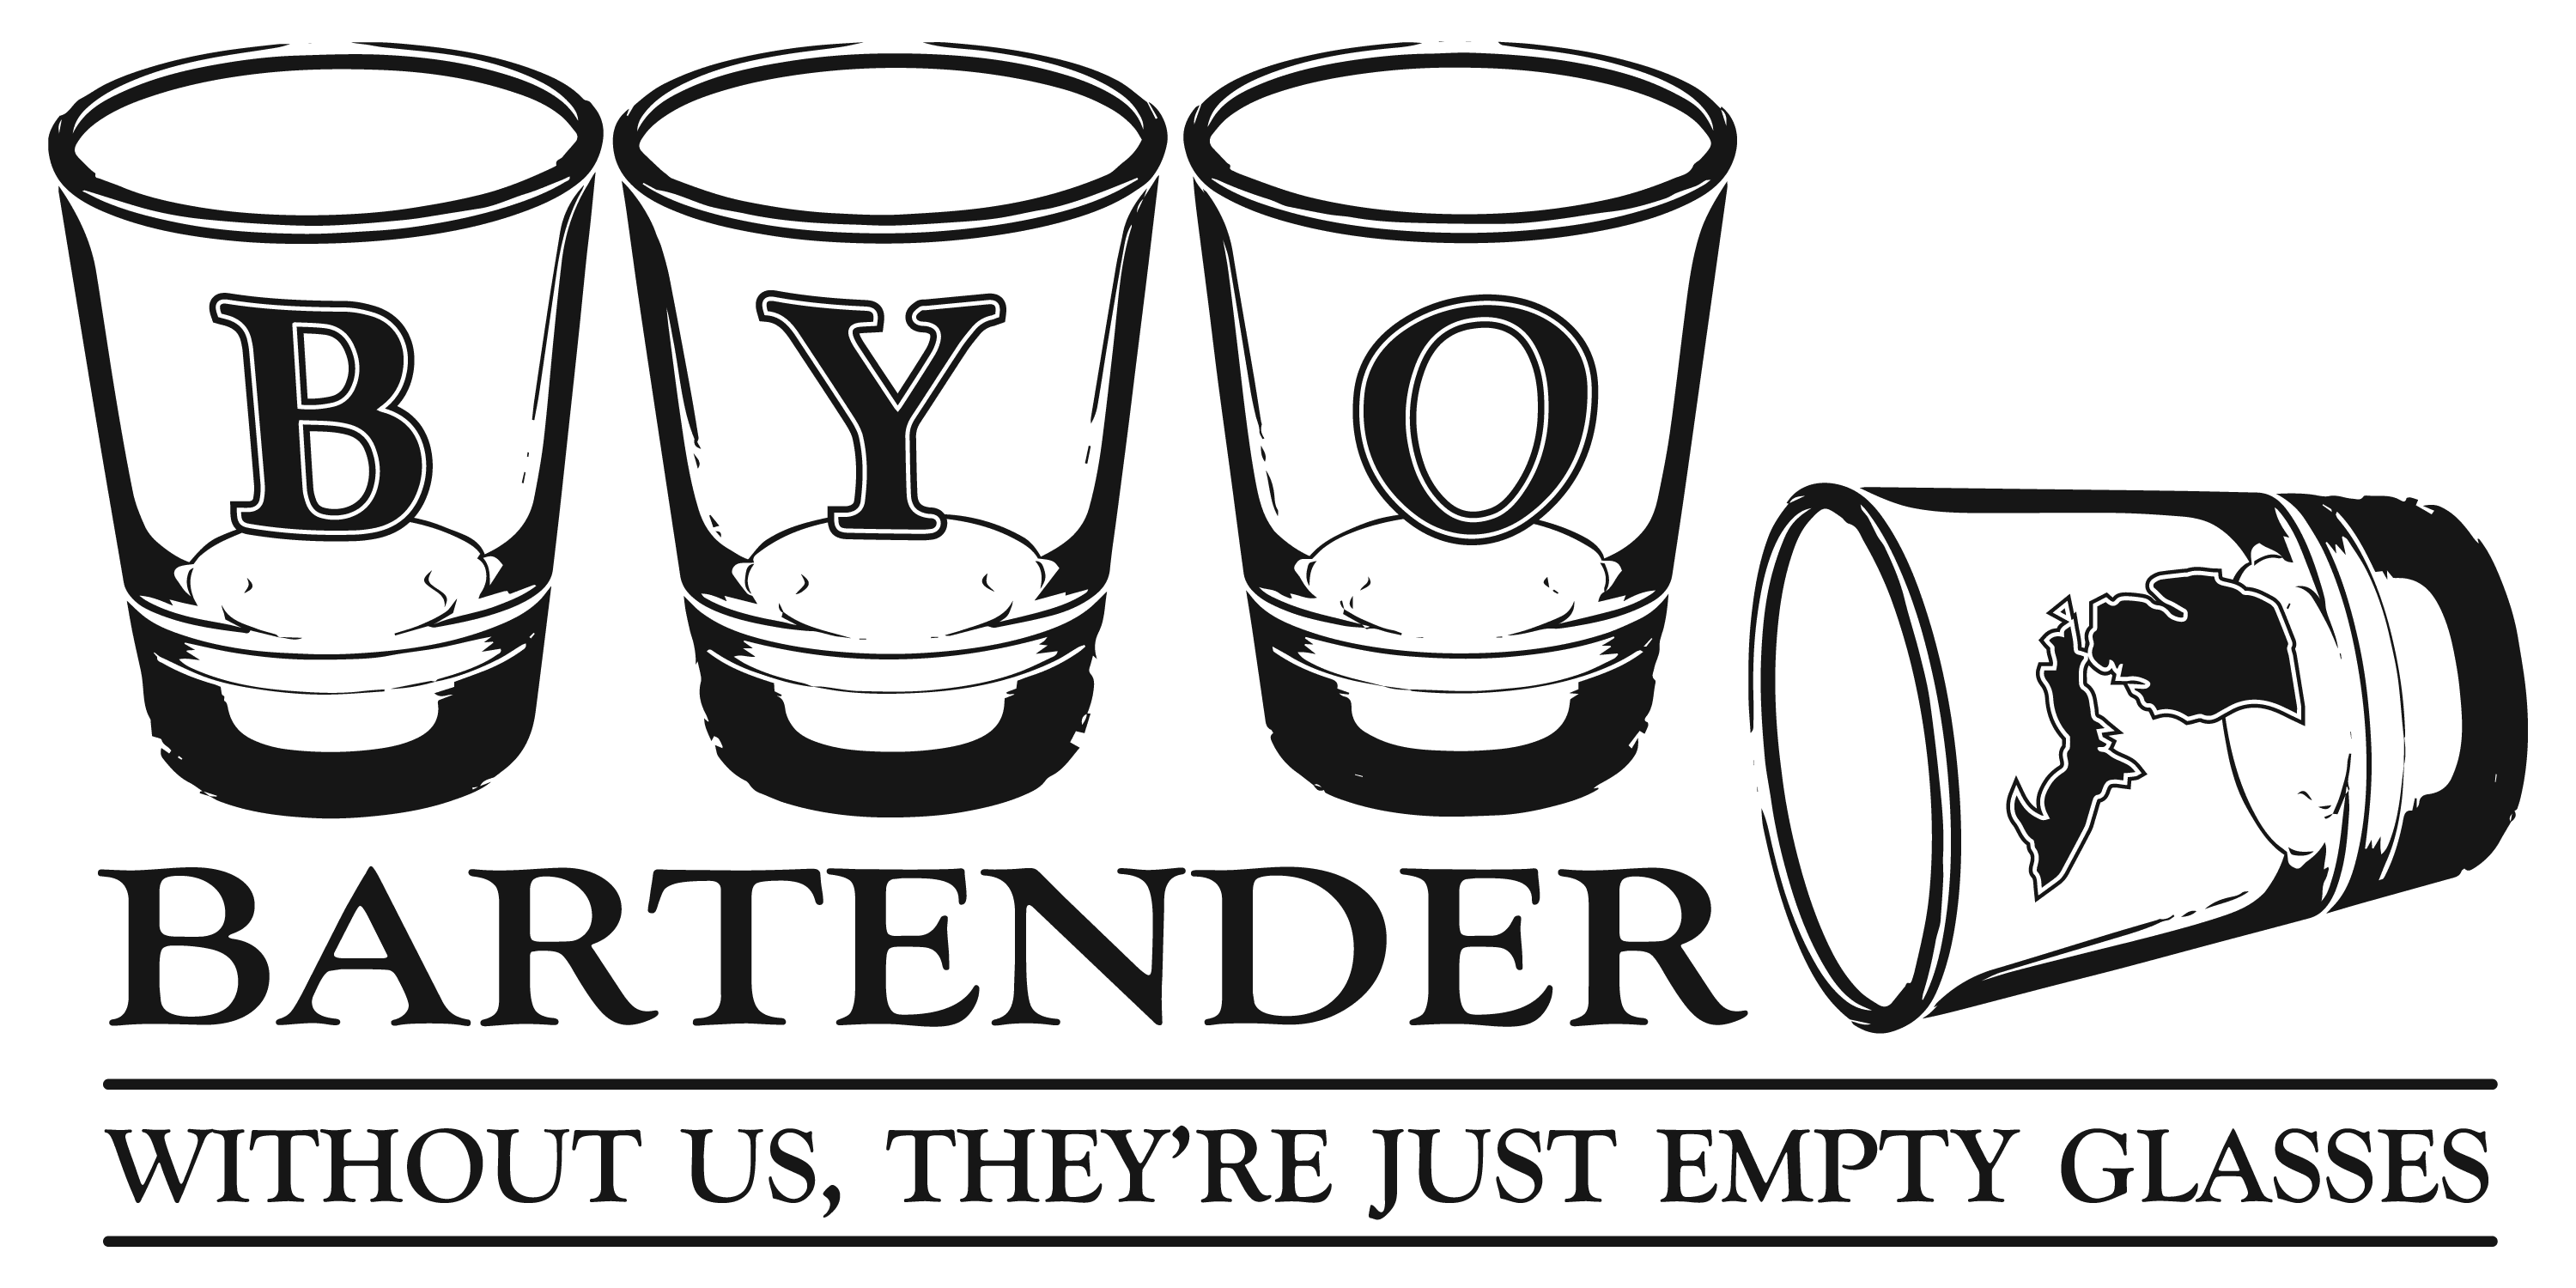 B.Y.O. Bartender of Michigan